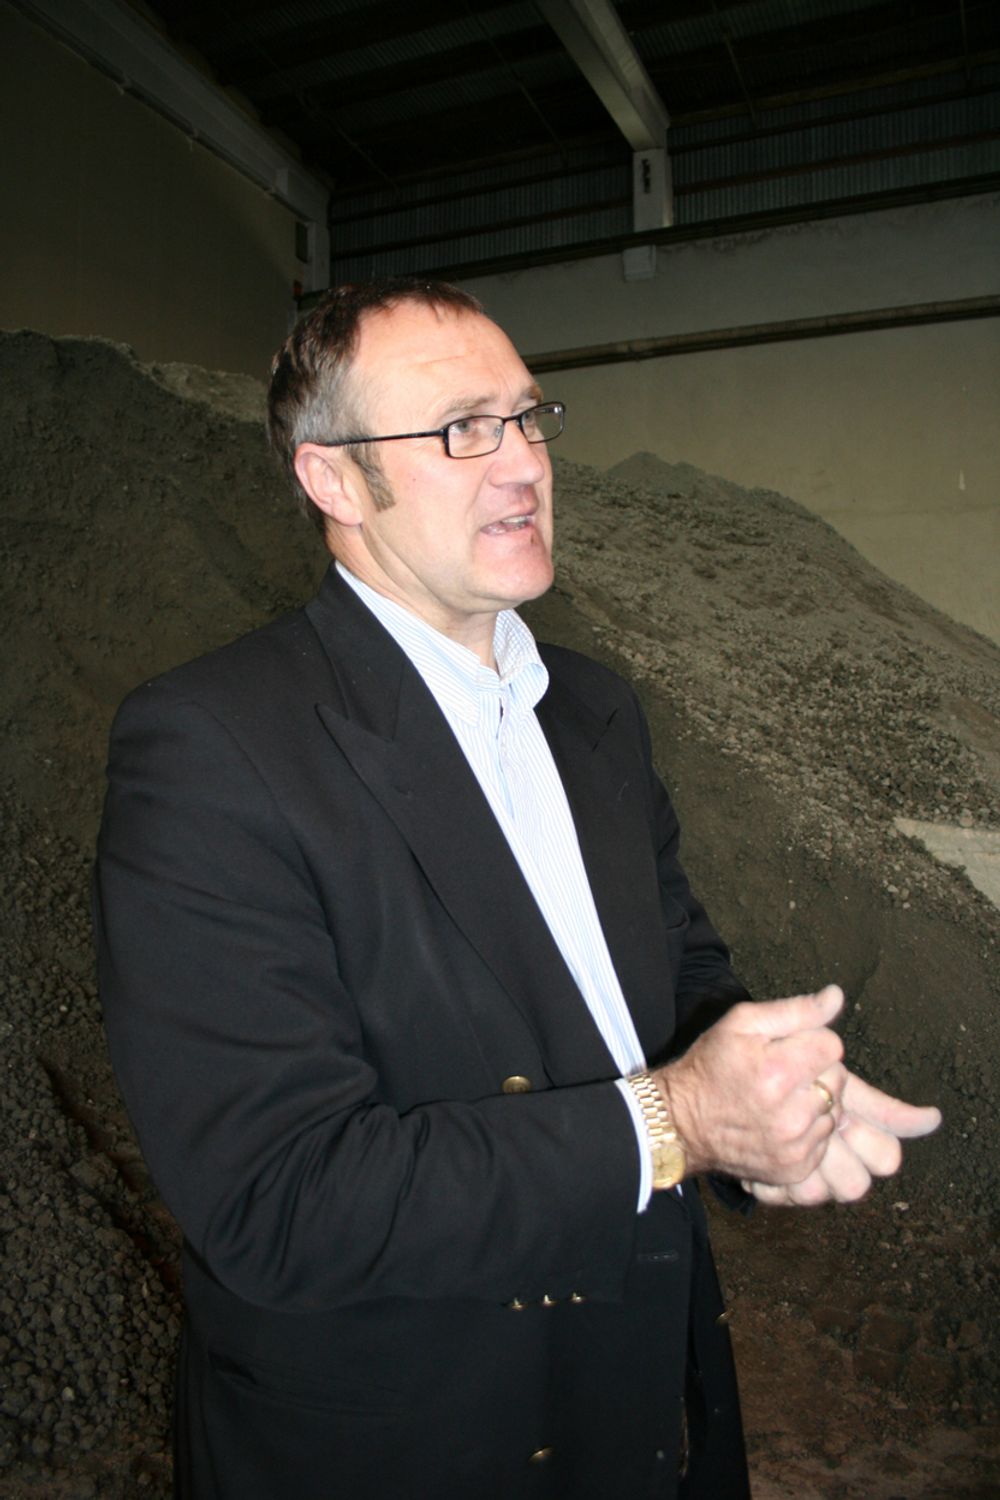 SATSER: Administererende direktør Harald Gilje i Jærtegl tar opp igjen gammel jærsk tradisjon: produksjon av murstein.